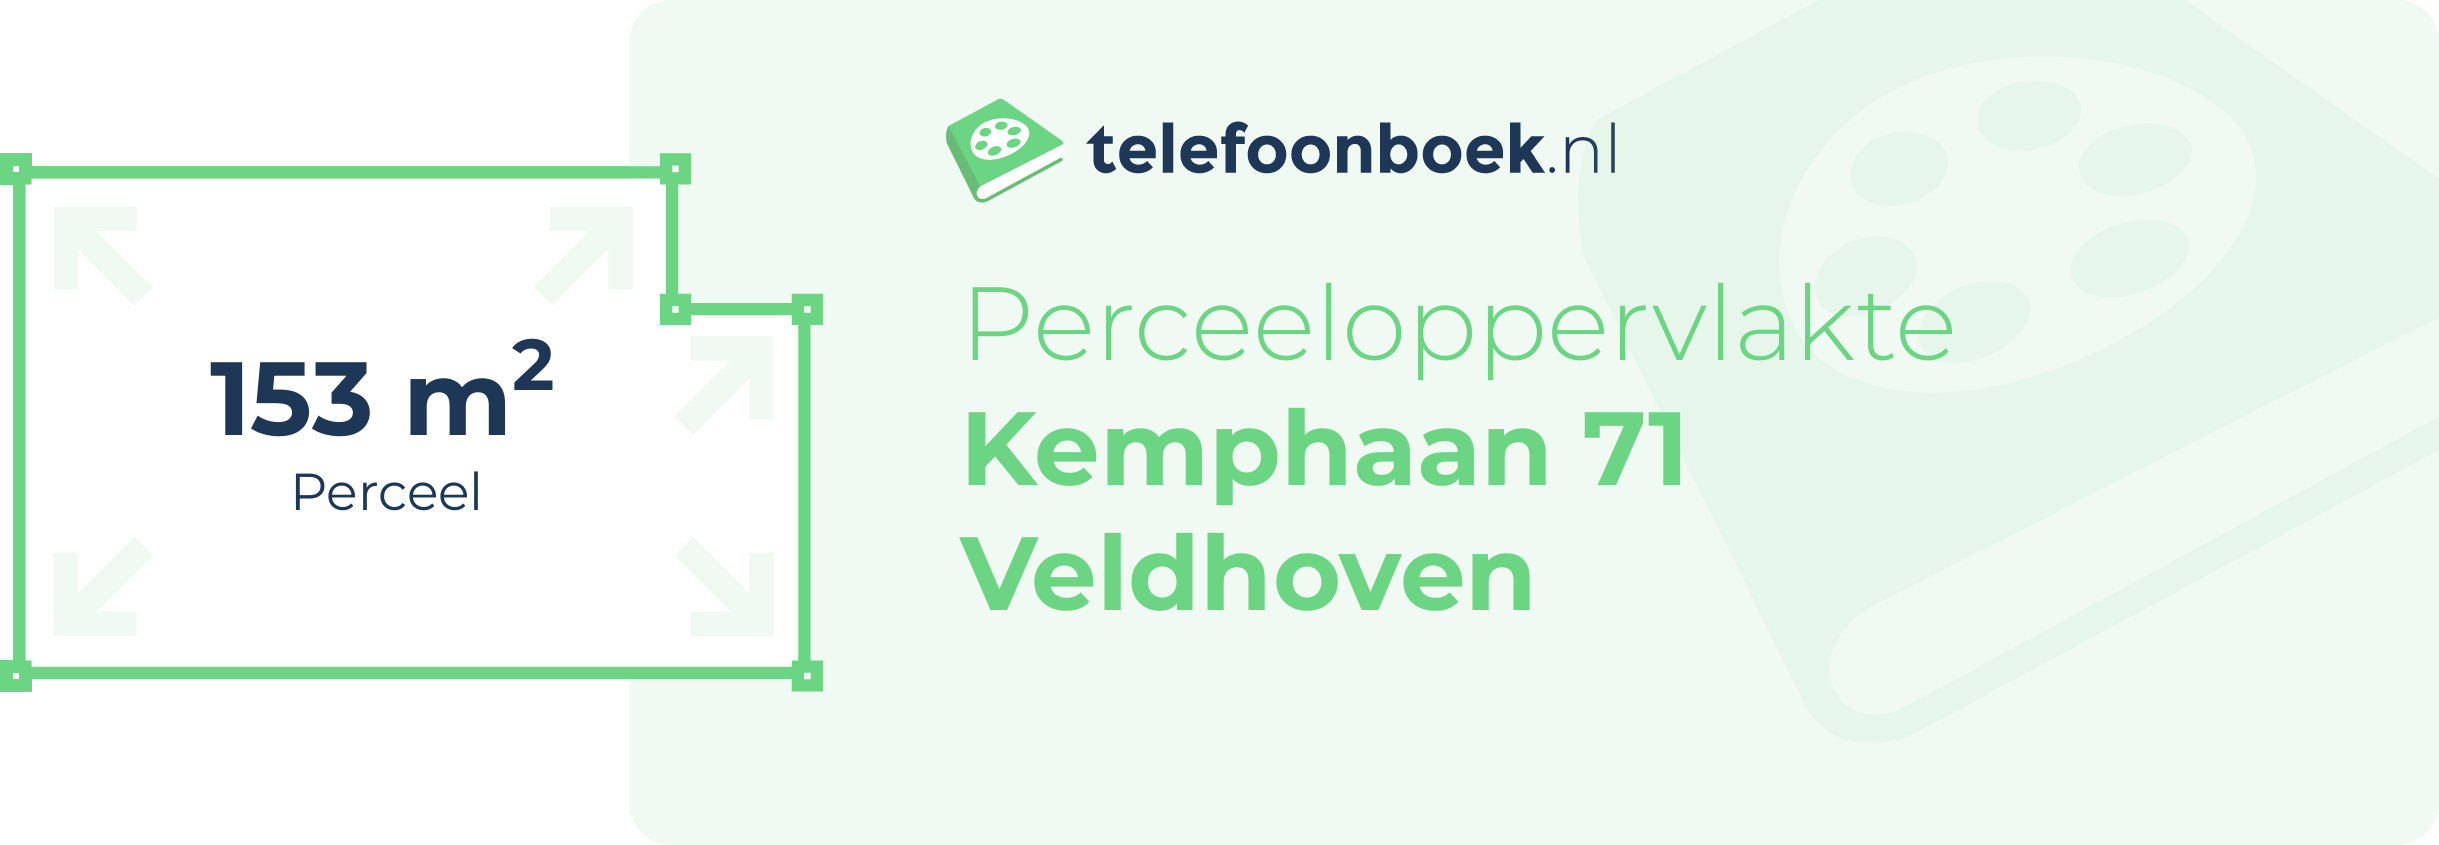 Perceeloppervlakte Kemphaan 71 Veldhoven